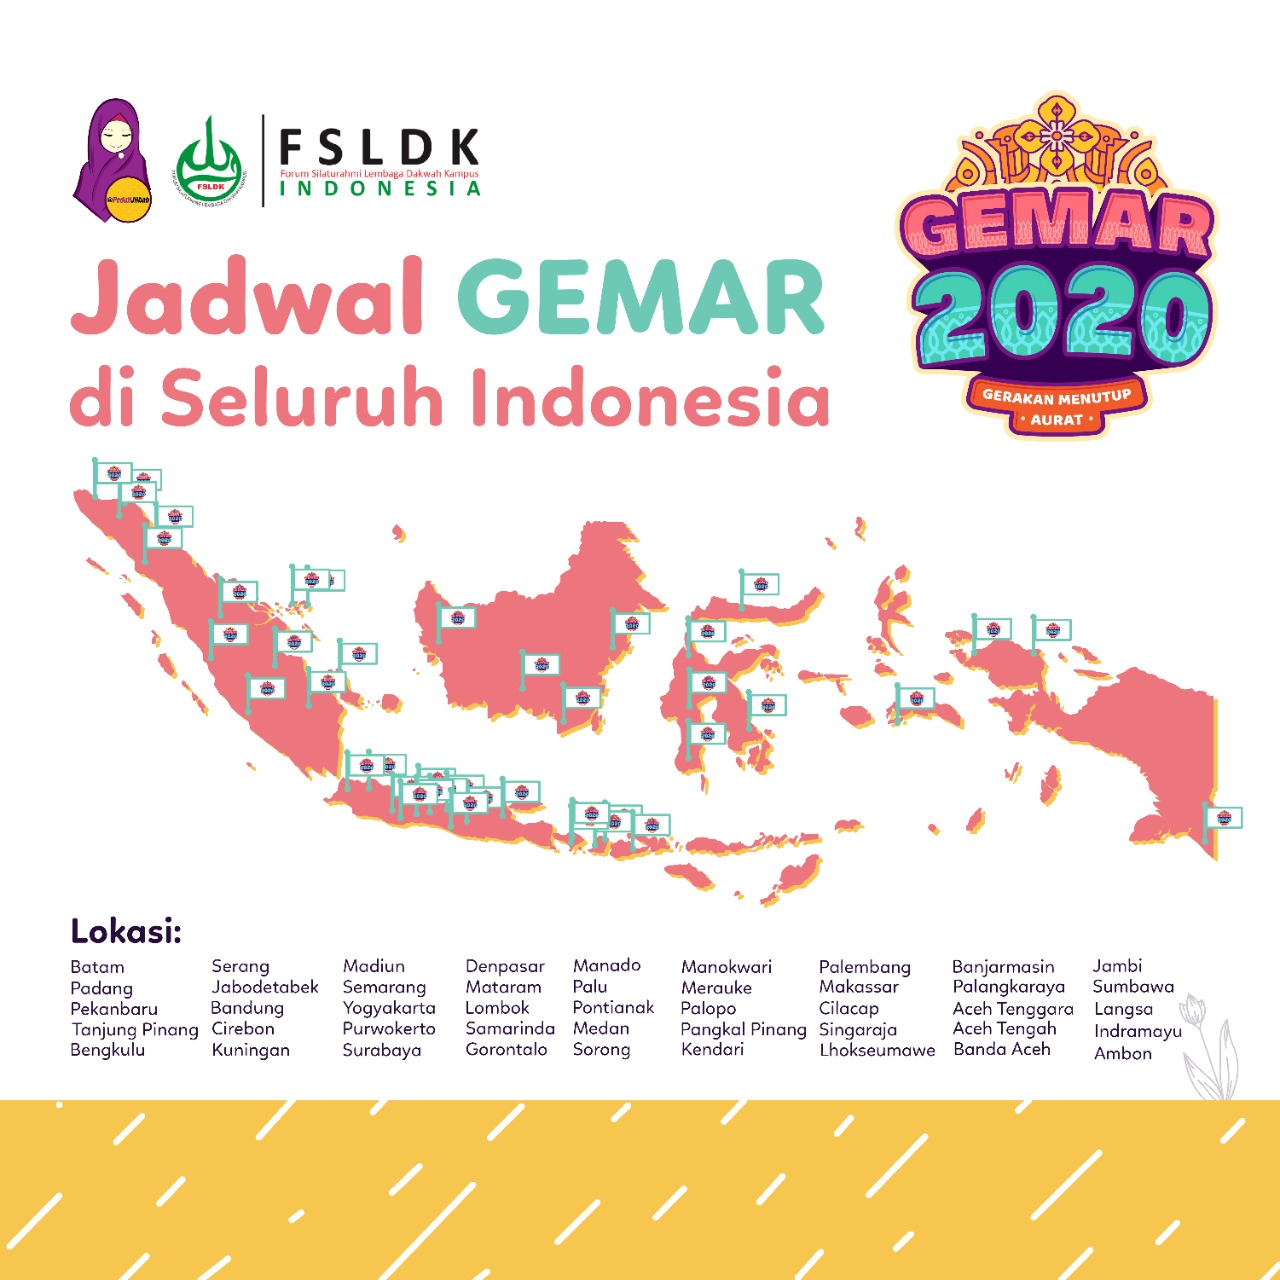 Gerakan Menutup Aurat 2020 Serentak di 53 Daerah Indonesia